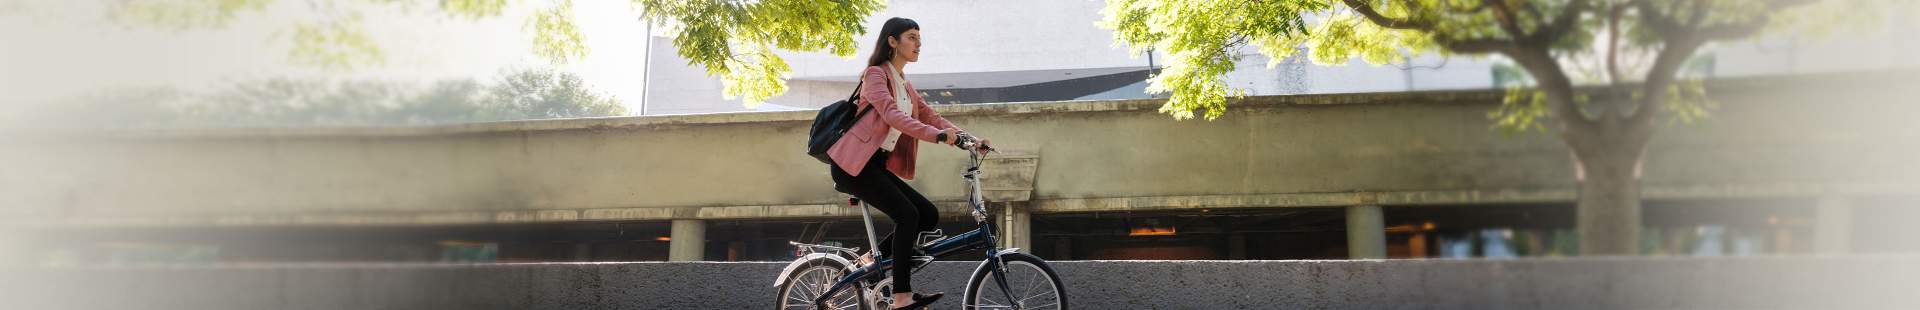 Business-Frau auf Fahrrad